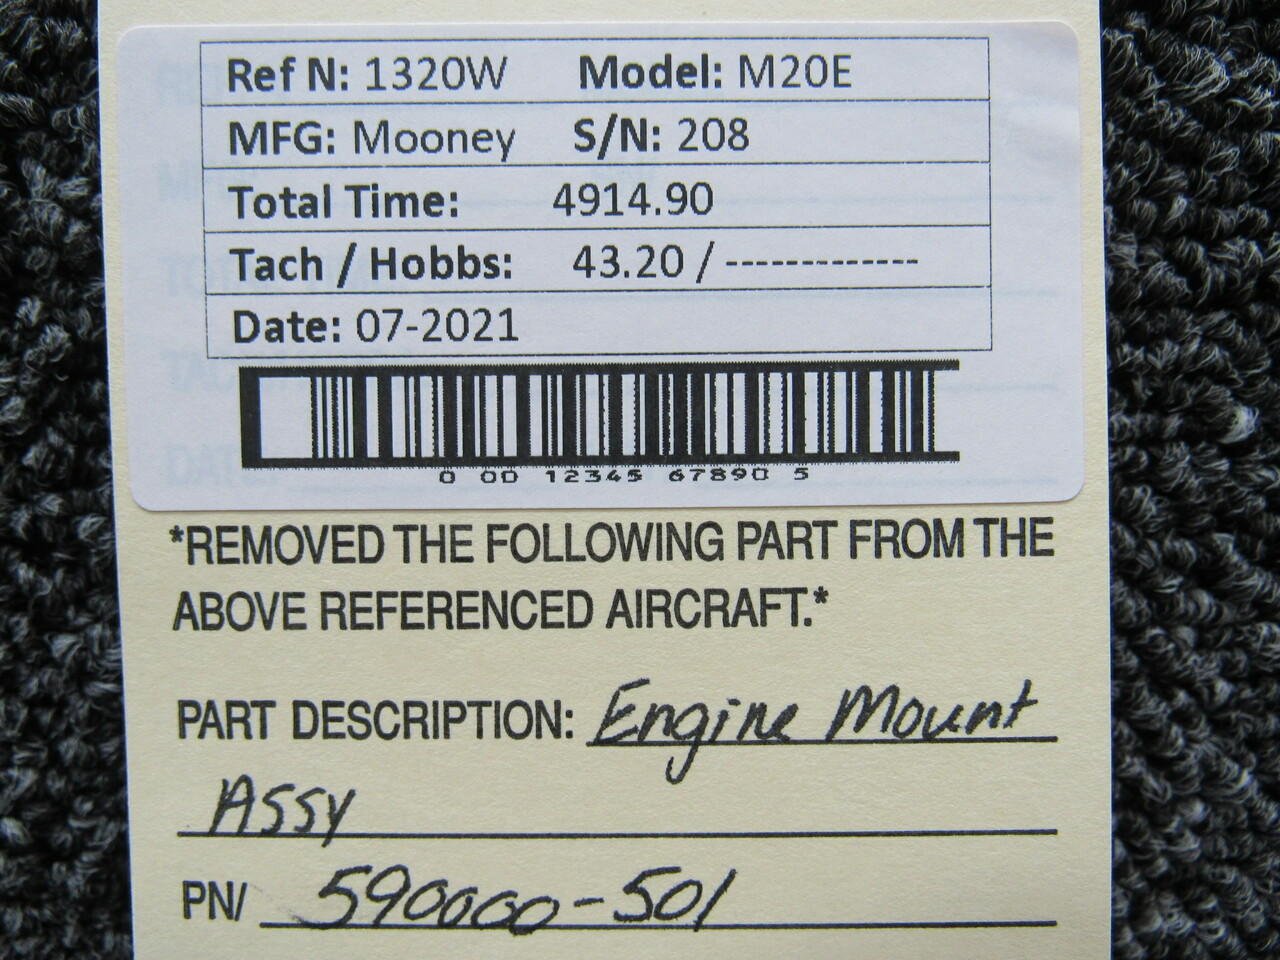 590000-501 (USE: 590000-511) Mooney M20E Engine Mount Assembly